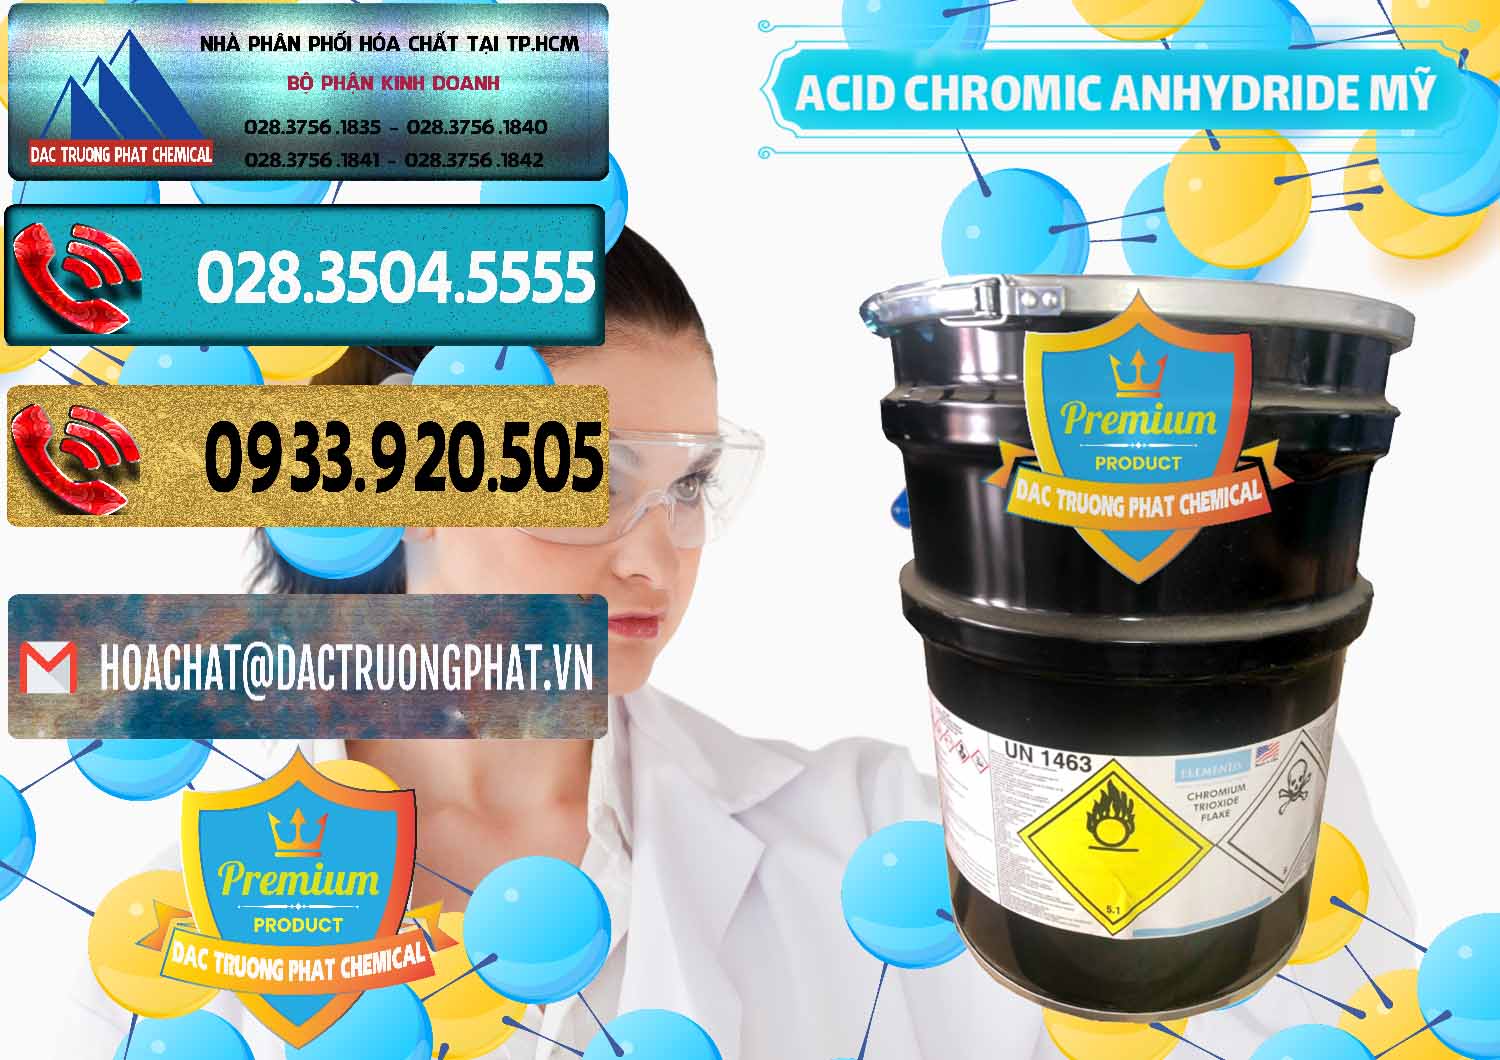 Nhập khẩu ( bán ) Acid Chromic Anhydride - Cromic CRO3 USA Mỹ - 0364 - Cty phân phối và cung ứng hóa chất tại TP.HCM - hoachatdetnhuom.com